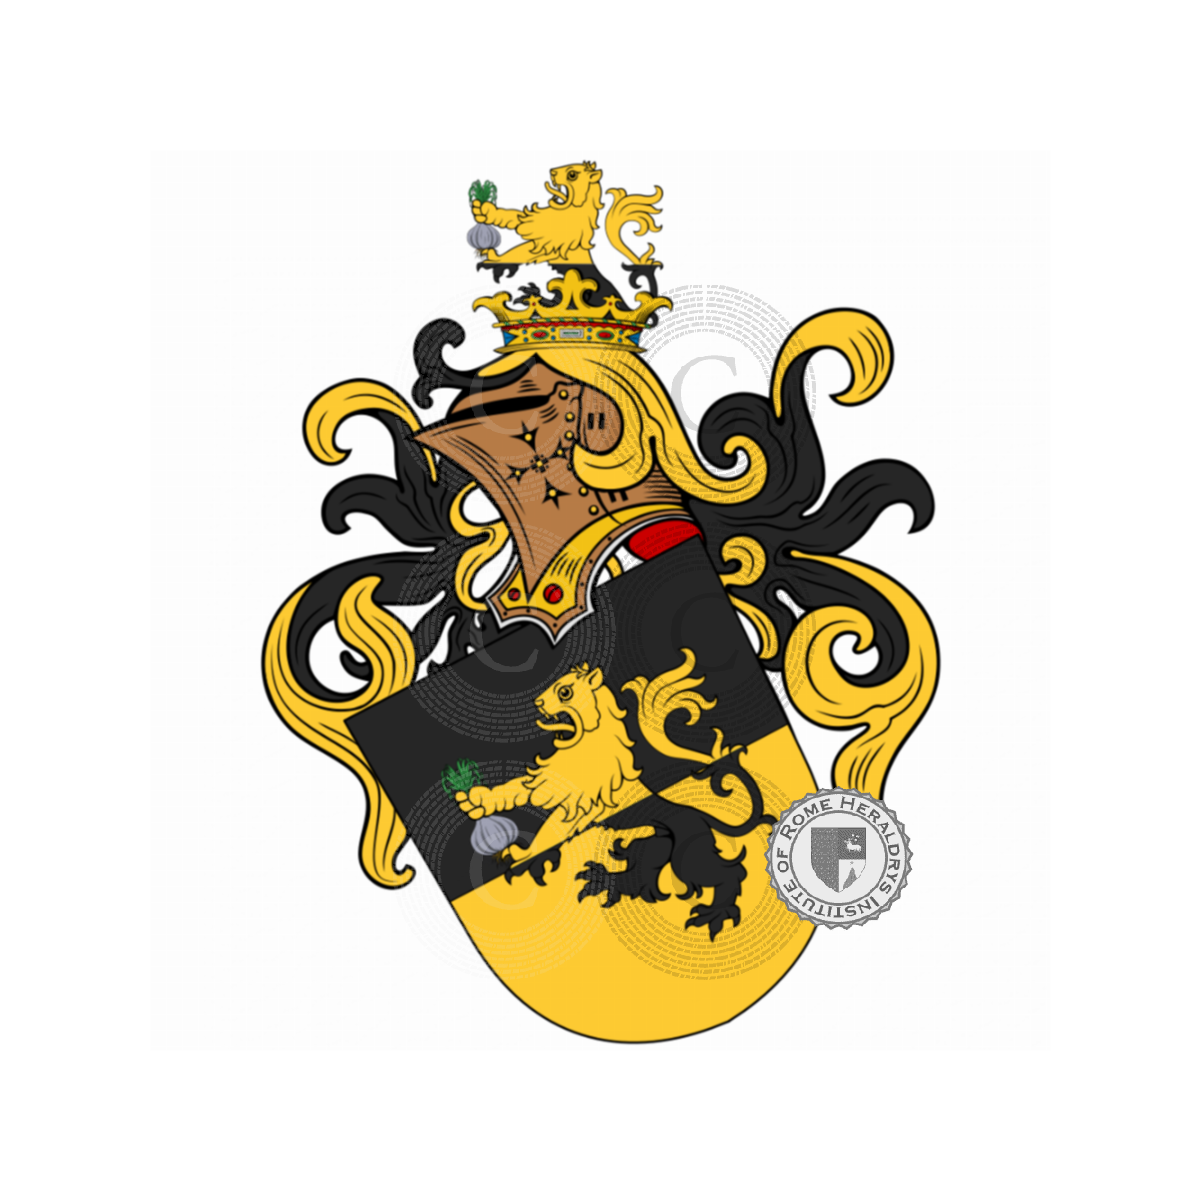 Escudo de la familiaKnobloch, Chnobolohe,Knoblauch,Knoblich,von Droste